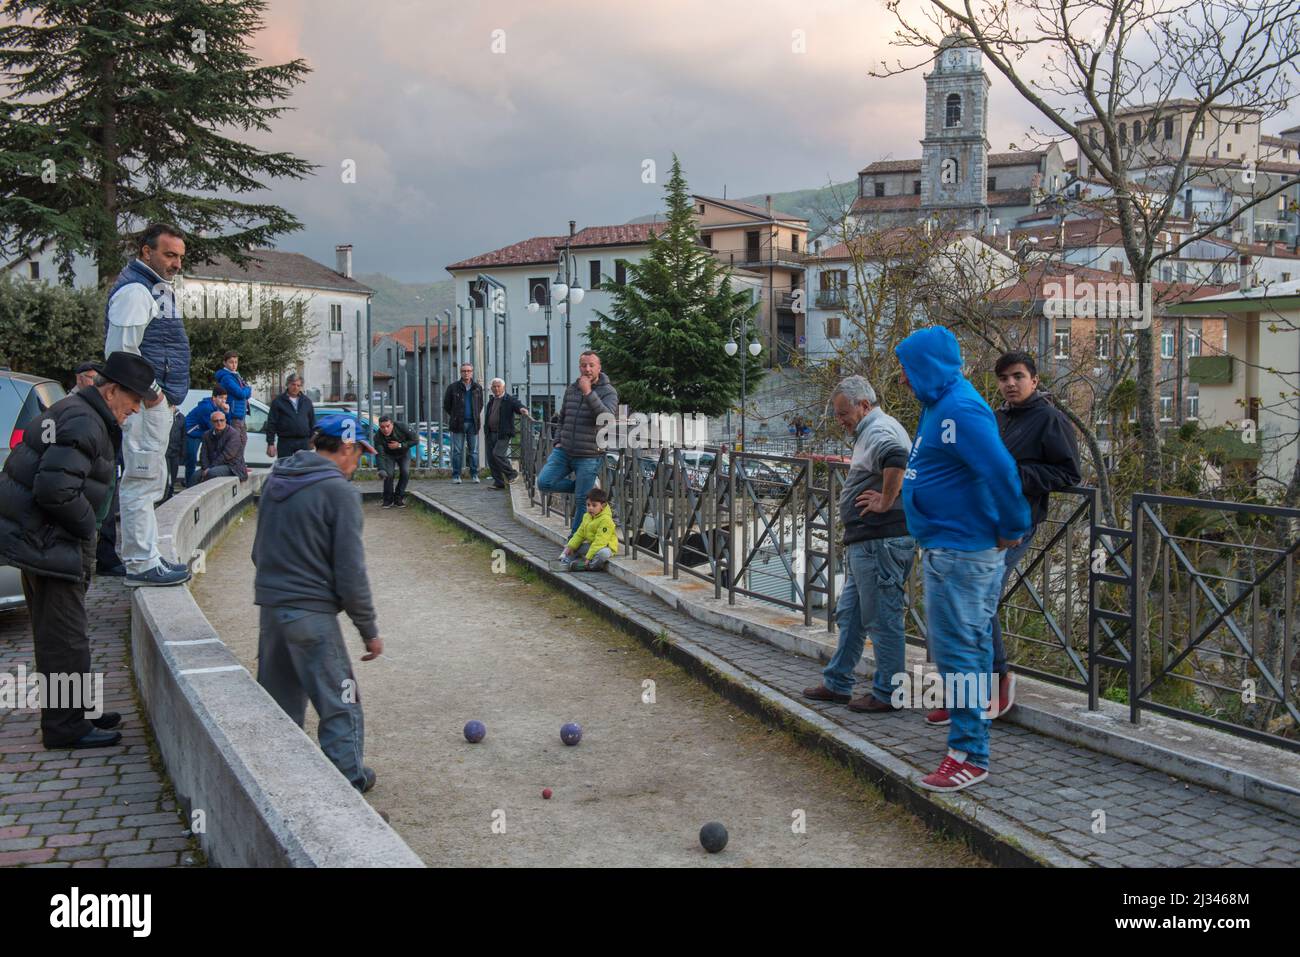 Savoia di Lucania (Potenza), Italie 21/04/2018: Les villageois jouent du bocce. © Andrea Sabbadini Banque D'Images